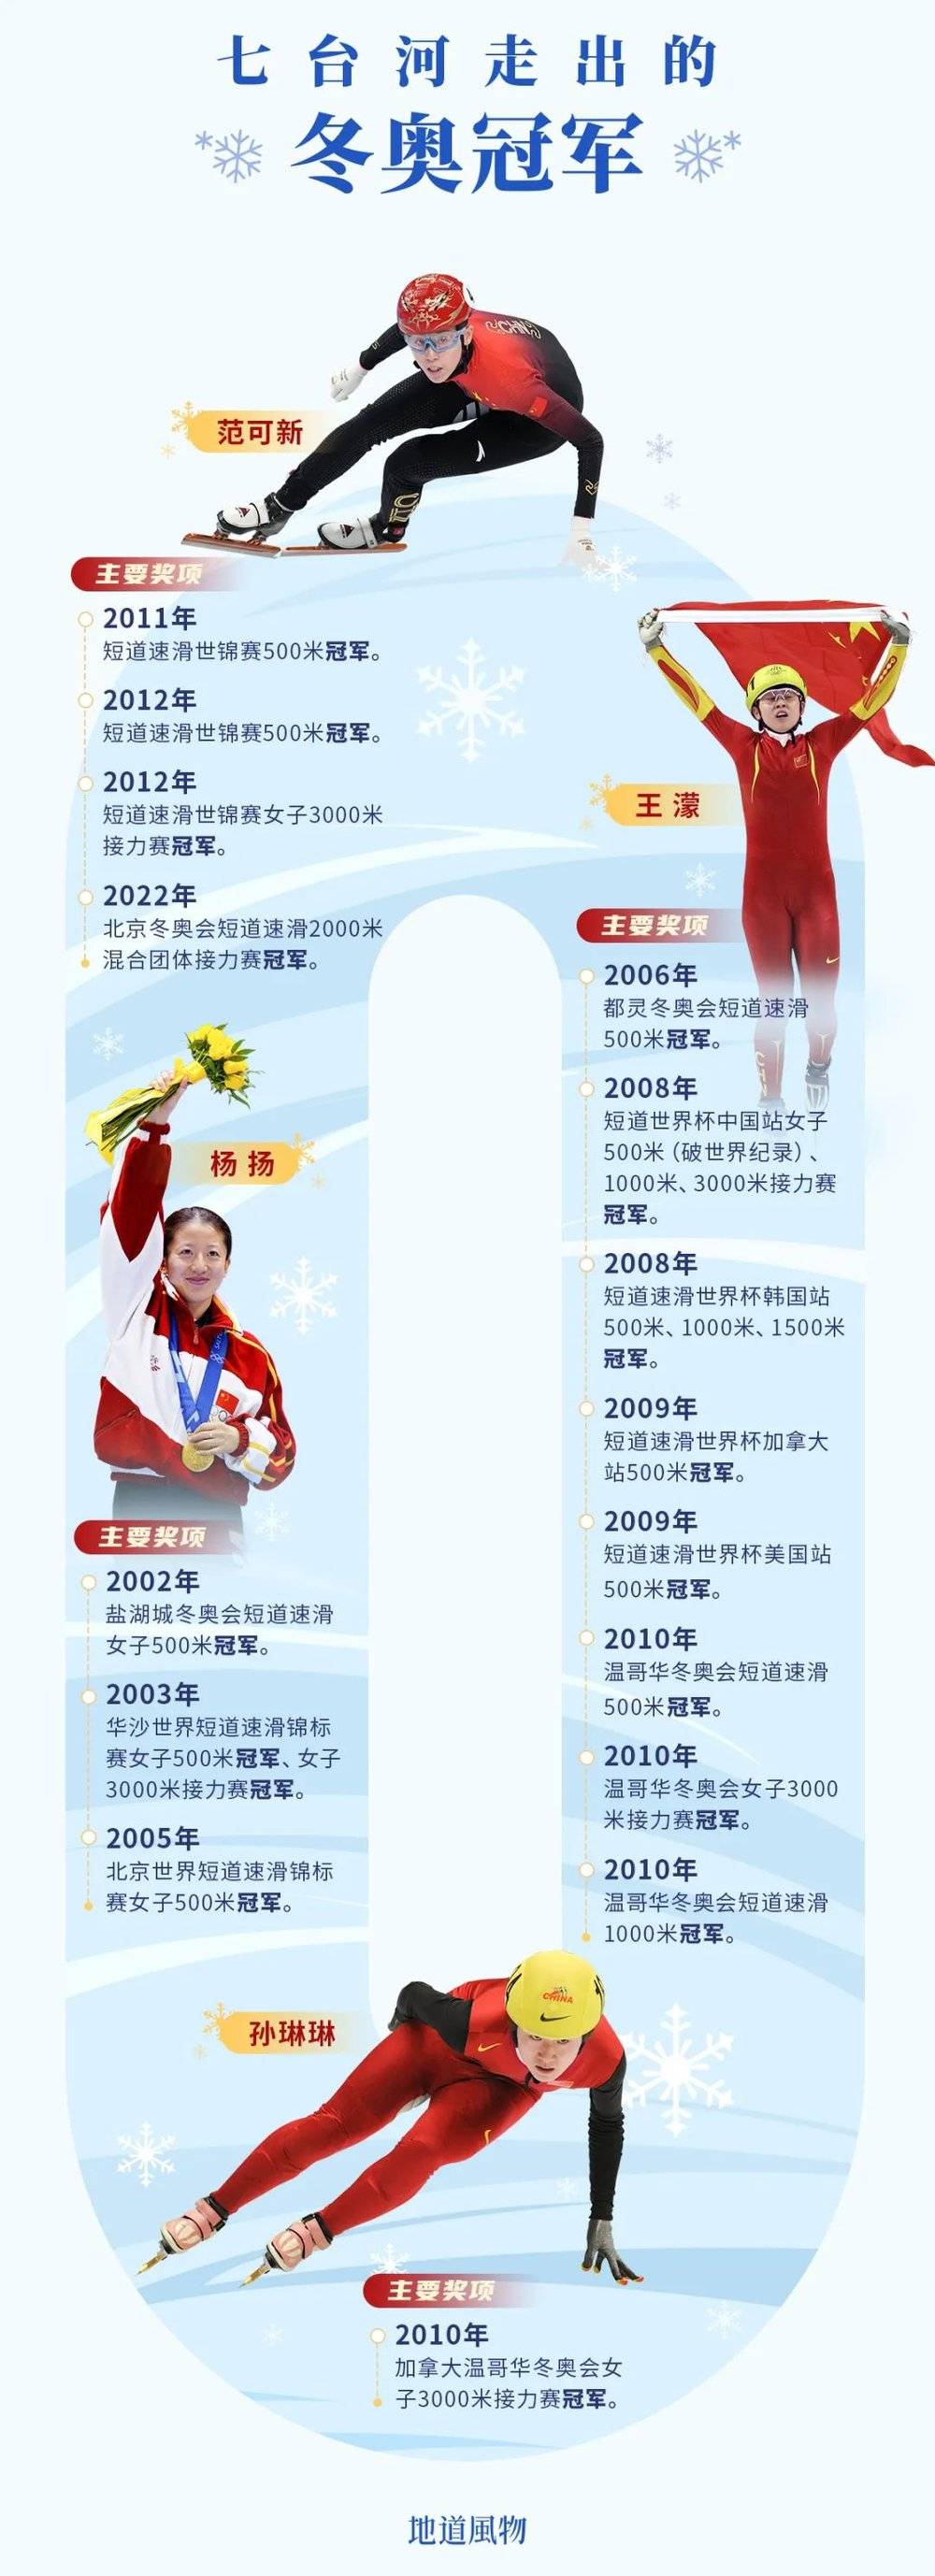 截至目前，七台河走出了四位冬奥冠军。制图/吴玖洋